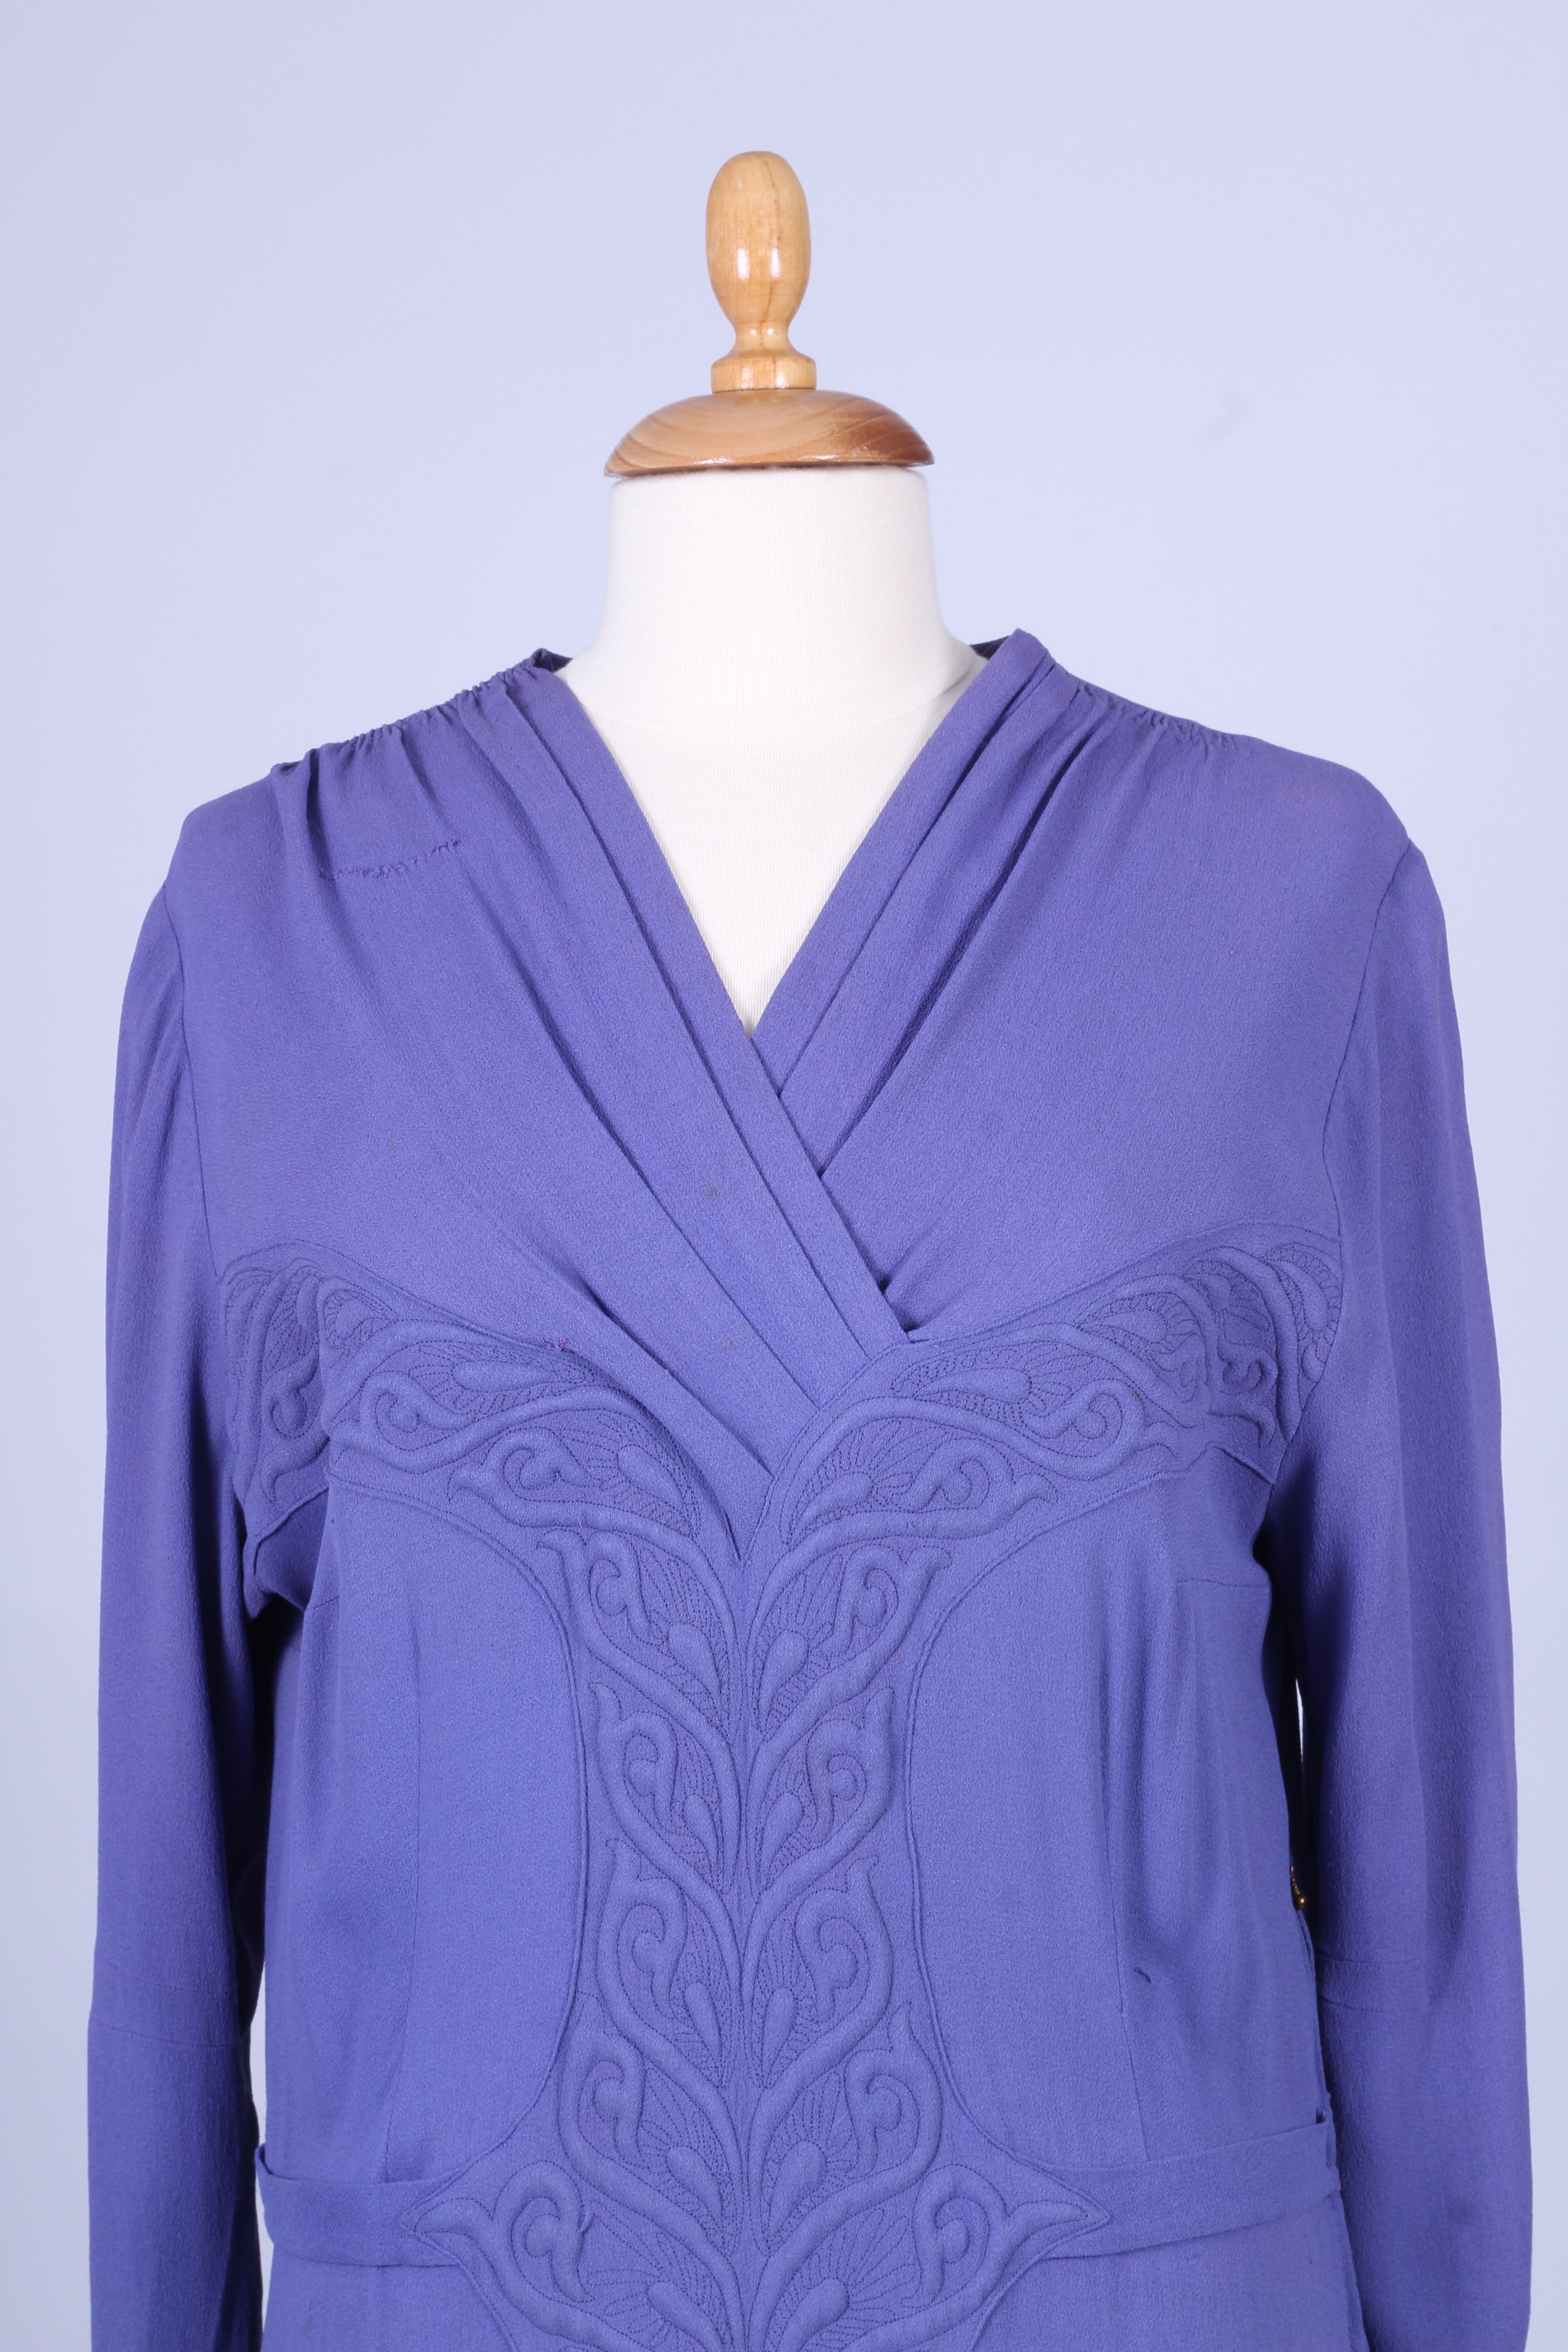 Lavendelfarvet kjole 1930. XL